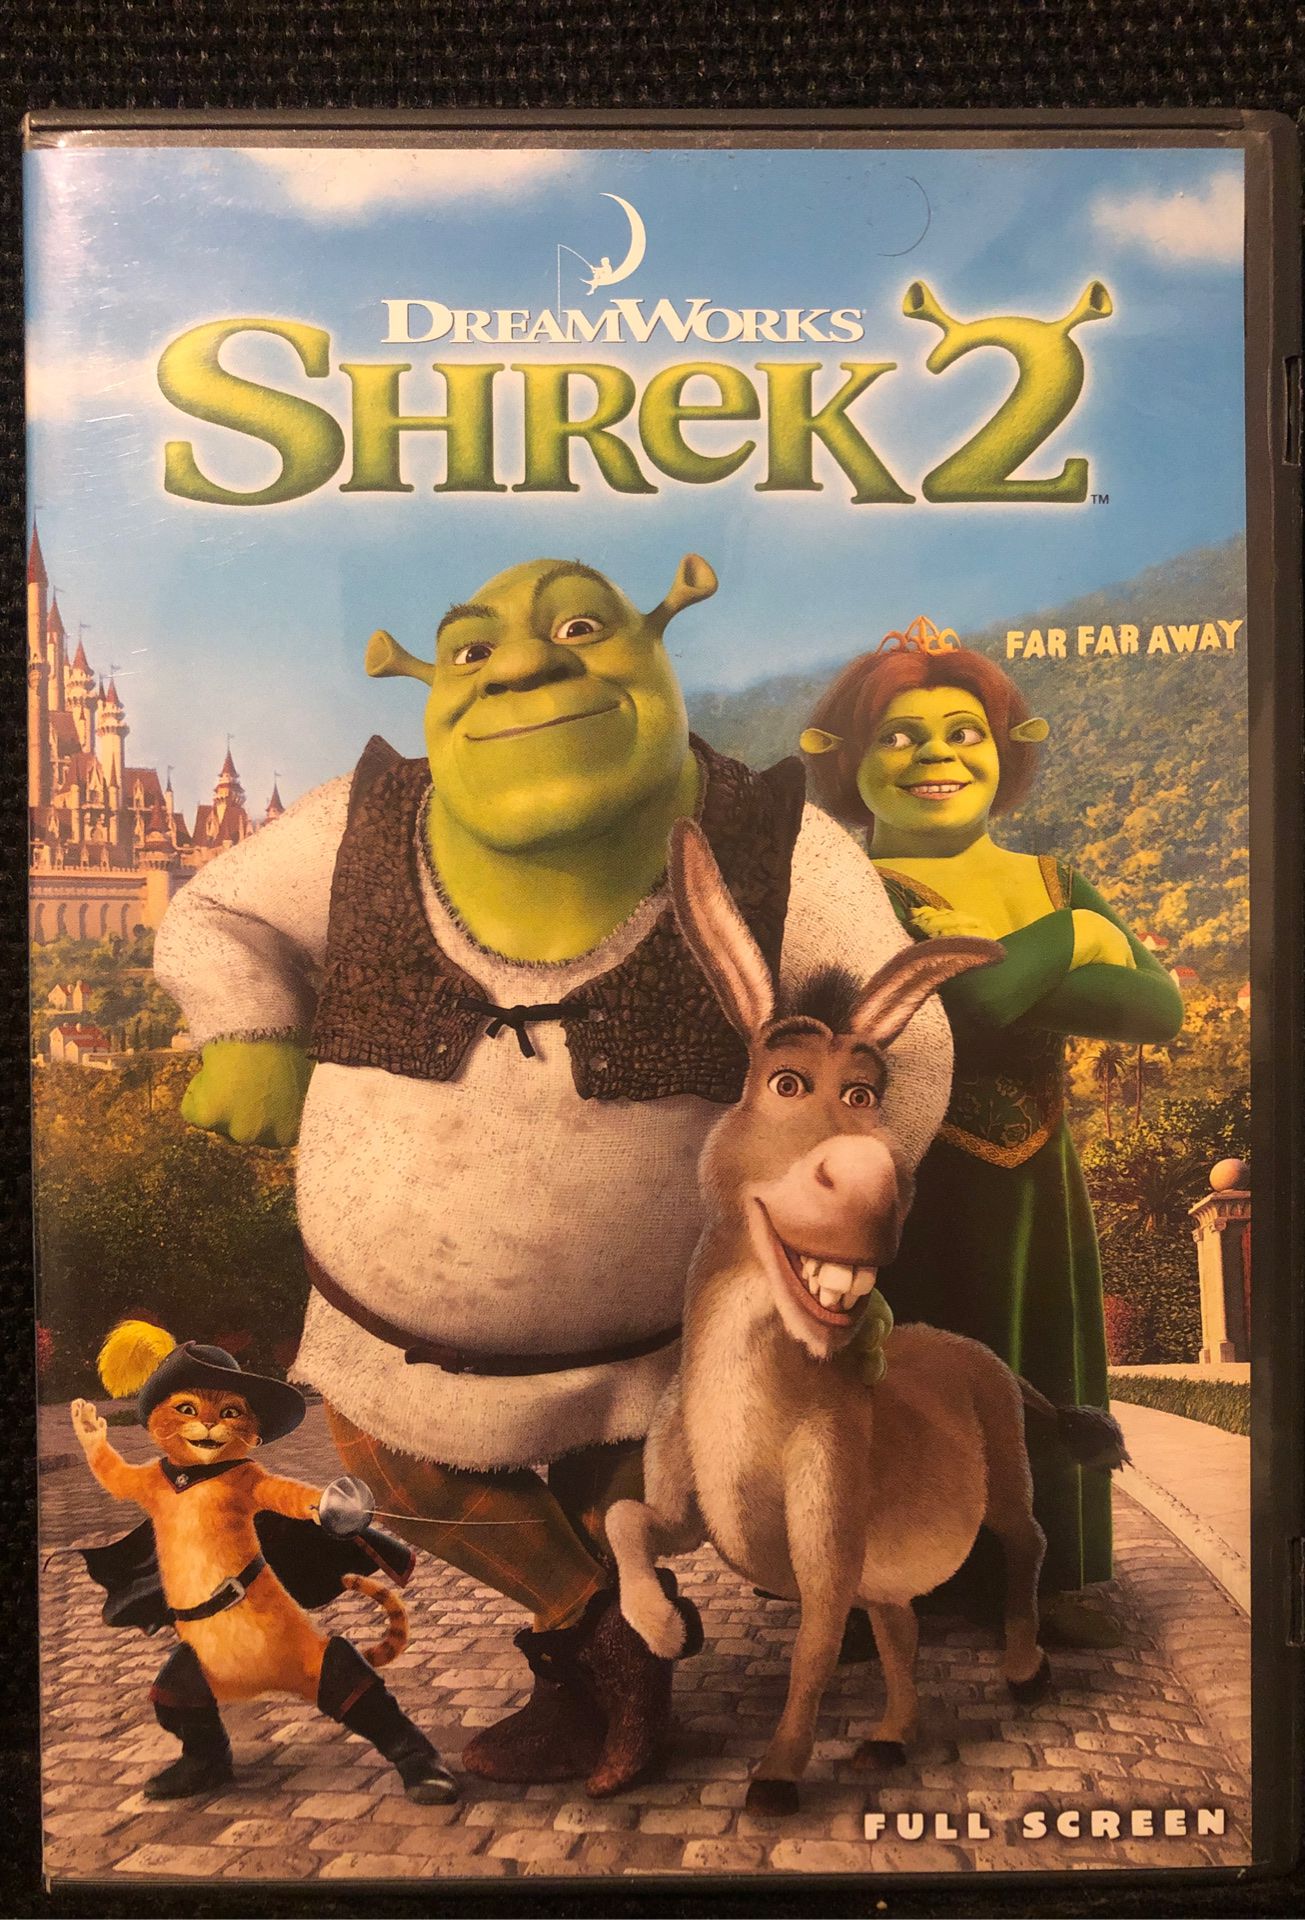 Shrek 2 DVD